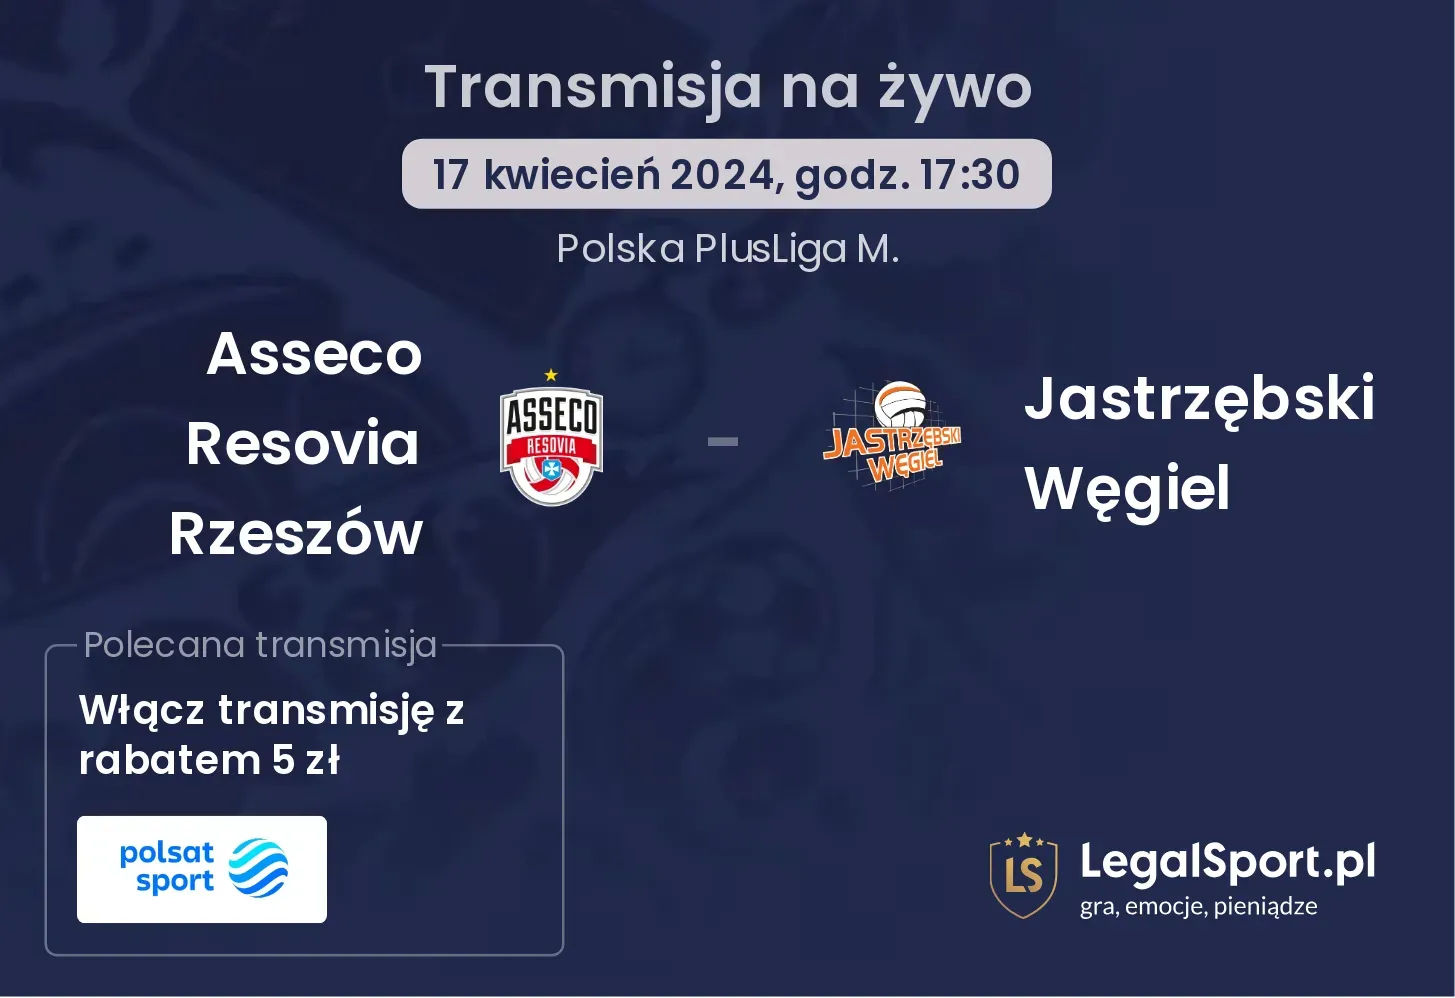 Asseco Resovia Rzeszów - Jastrzębski Węgiel transmisja na żywo